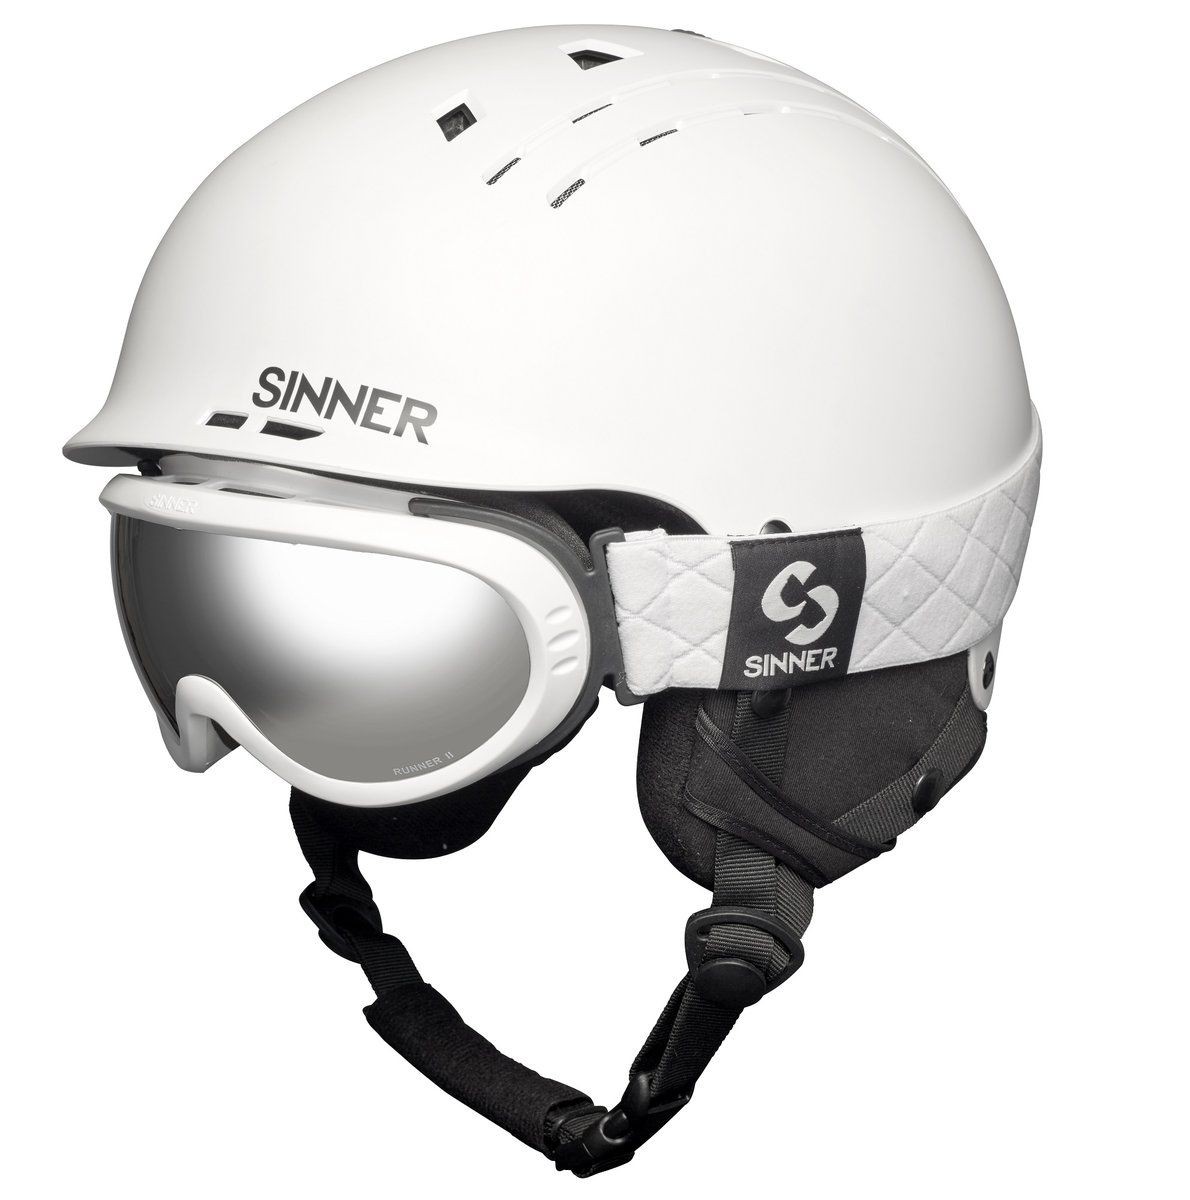 Aanstellen besteden Apt Sinner Combi-Pack (Pincher Skihelm + Runner II Skibril) | MeerDeals.nl